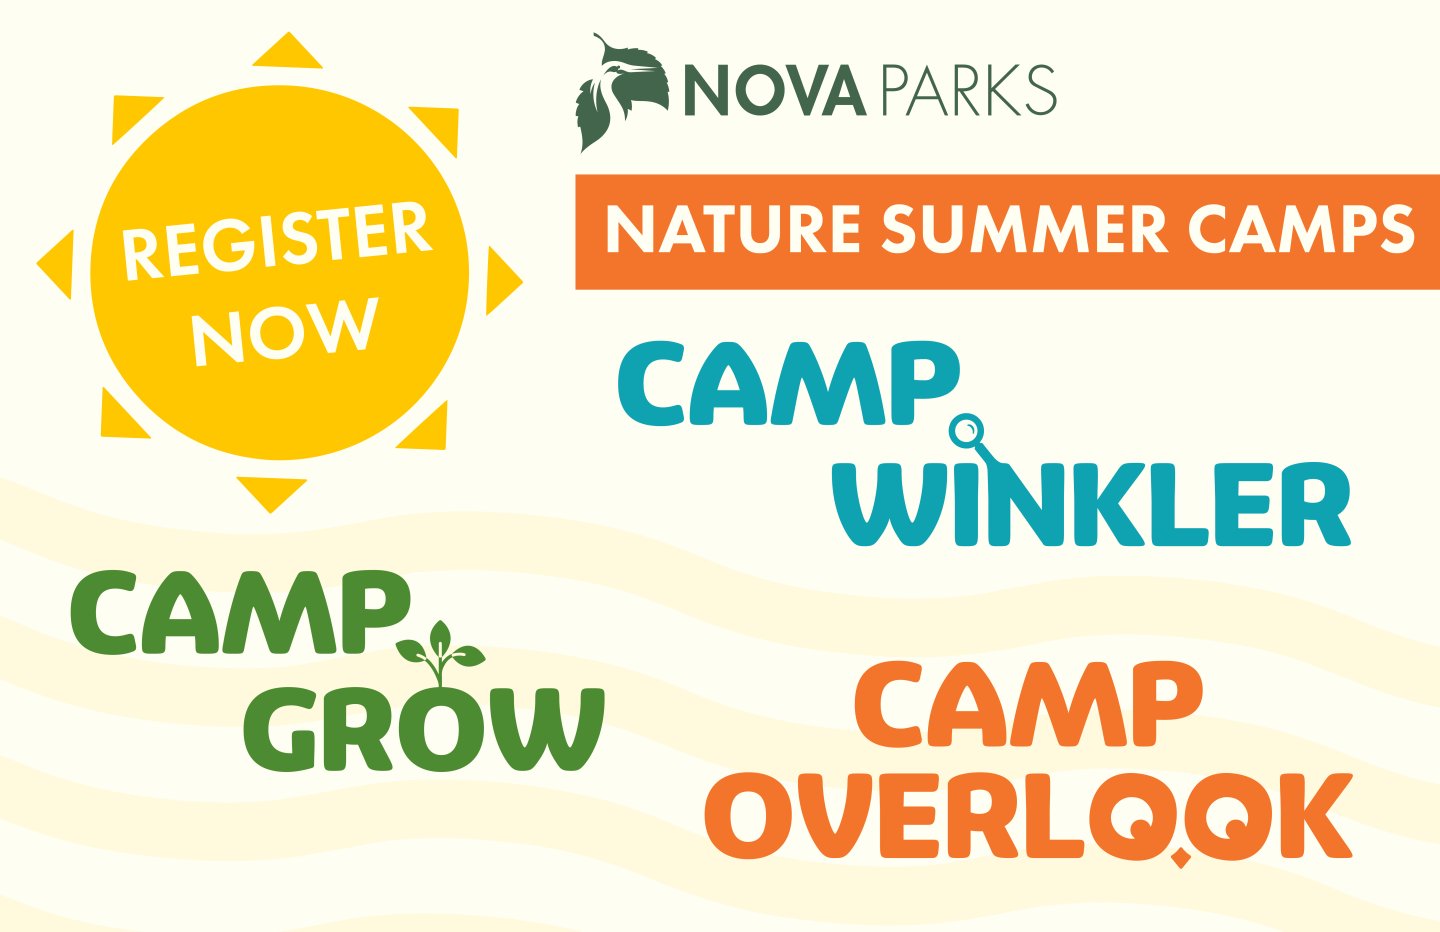 Camp Grow Camp Overlook Camp Winkler Registration Now Open